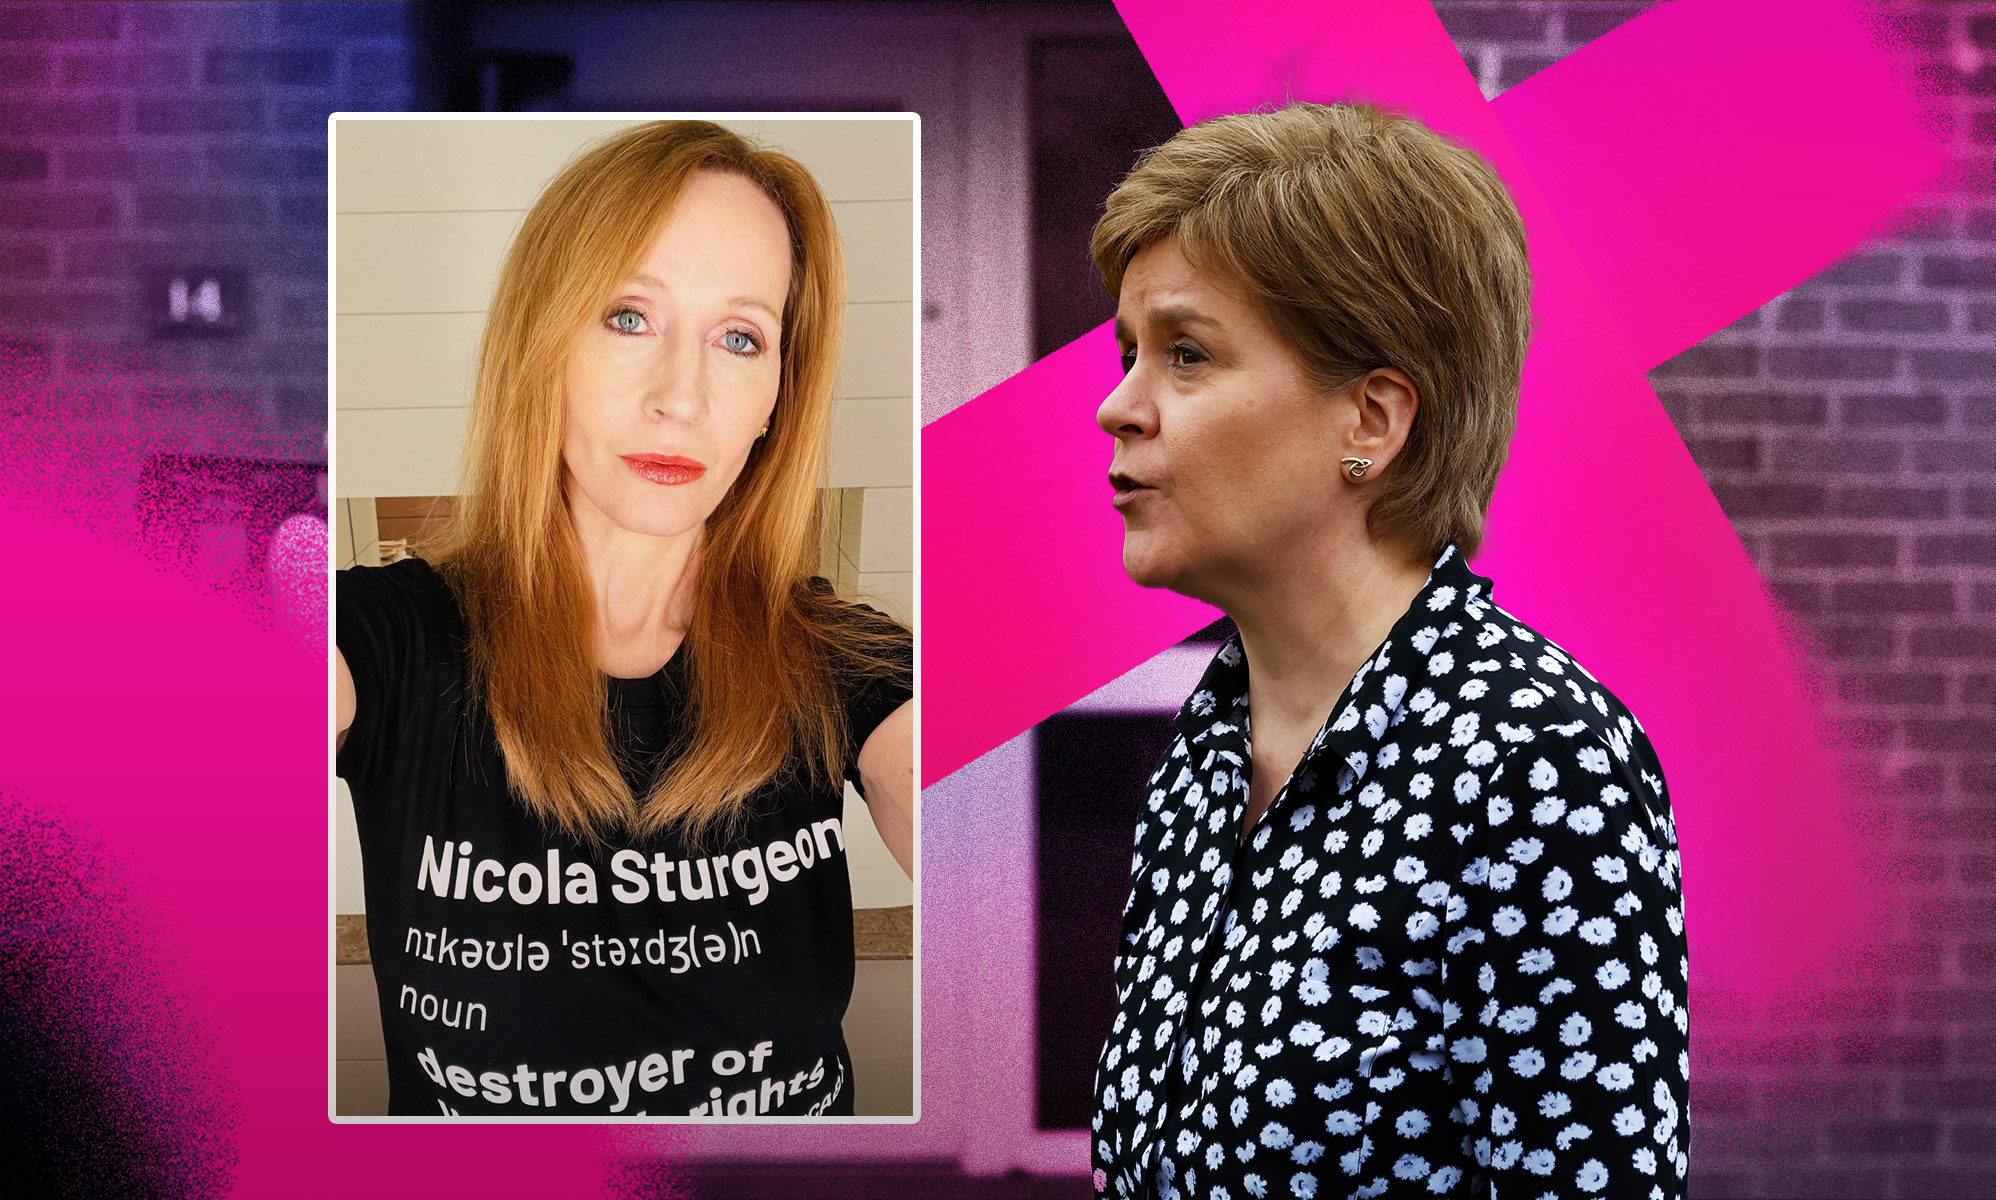 Nicola Sturgeon contraataca a JK Rowling por "destruir los derechos de la mujer"